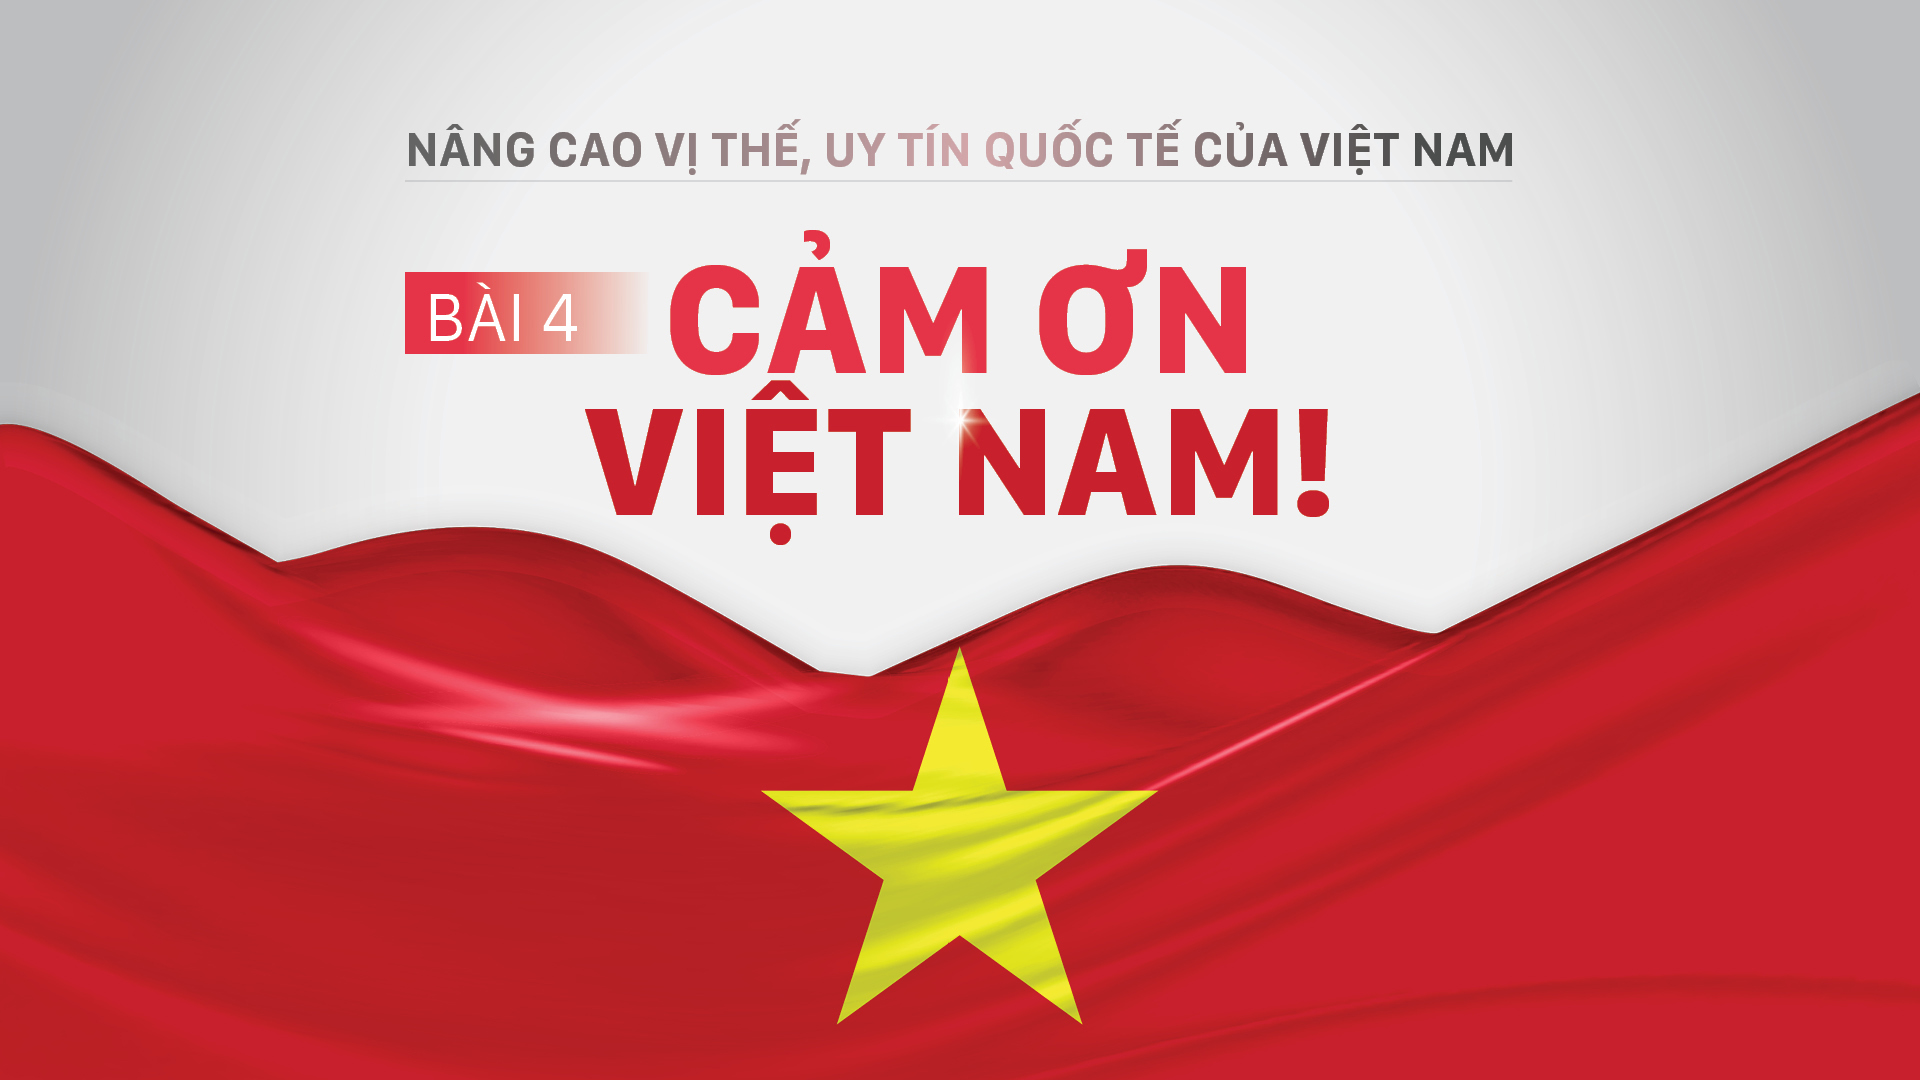 Nâng cao vị thế, uy tín quốc tế của Việt Nam - Bài 4: Cảm ơn Việt Nam!